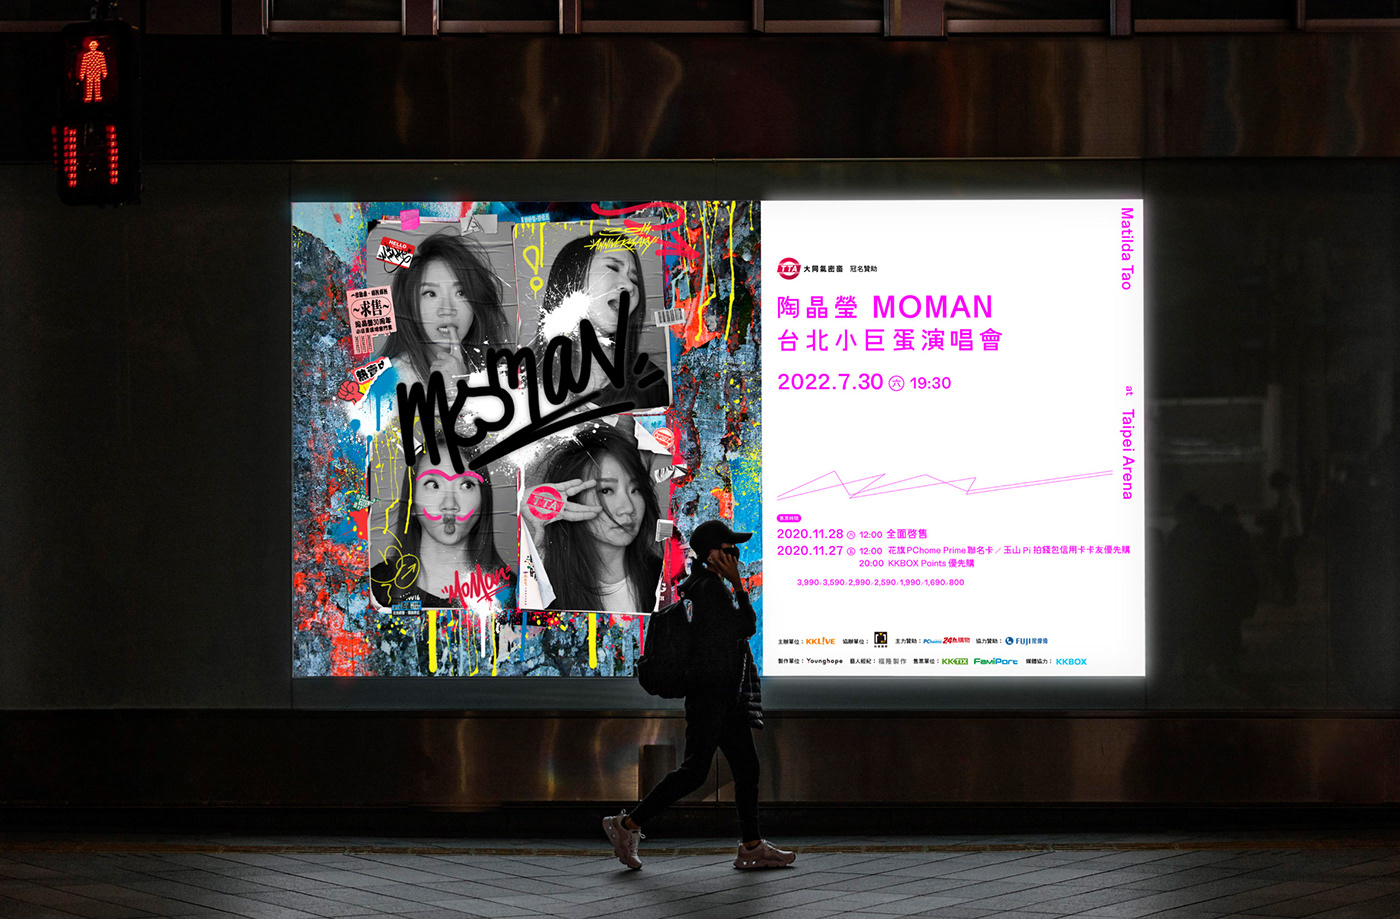 artist concert Event flyer Graffiti music poster pink Street